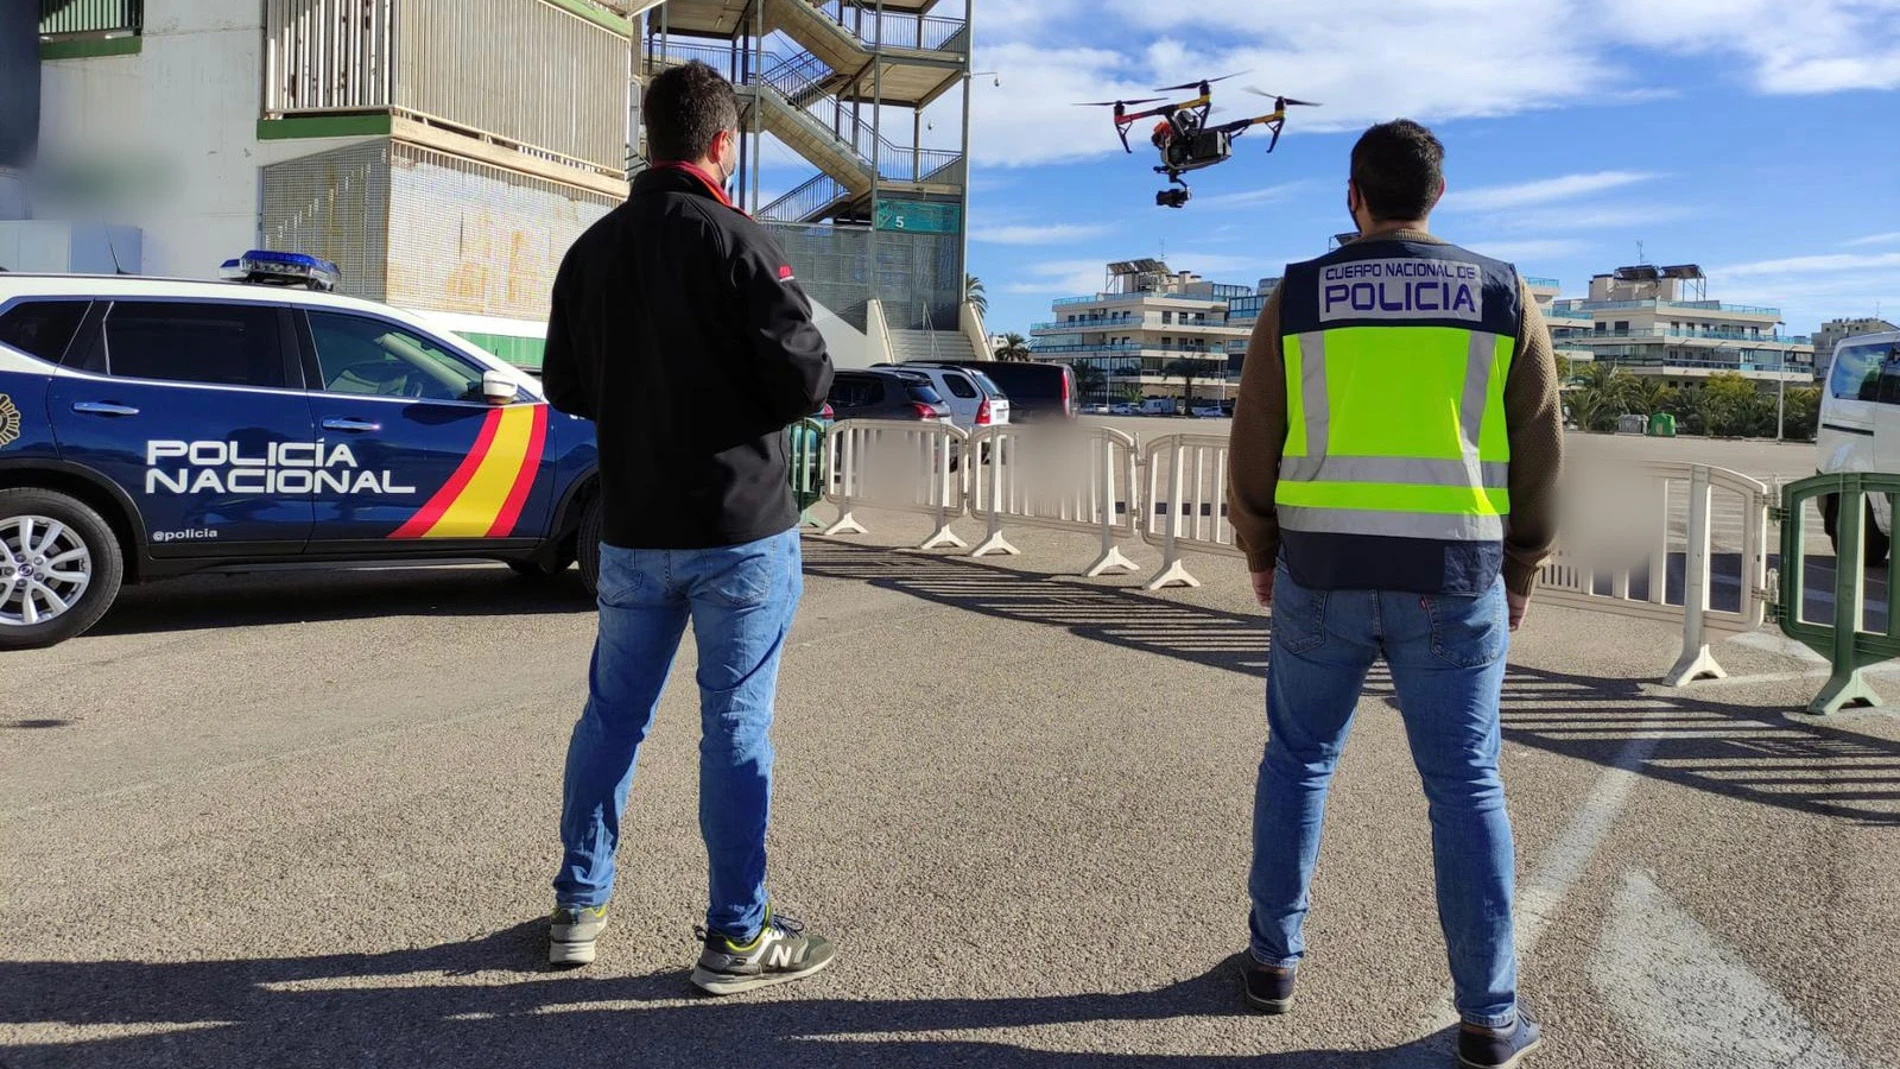 La Policía Nacional activó el protocolo anti dron por el vuelo no autorizado de una aeronave durante un partido de fútbol